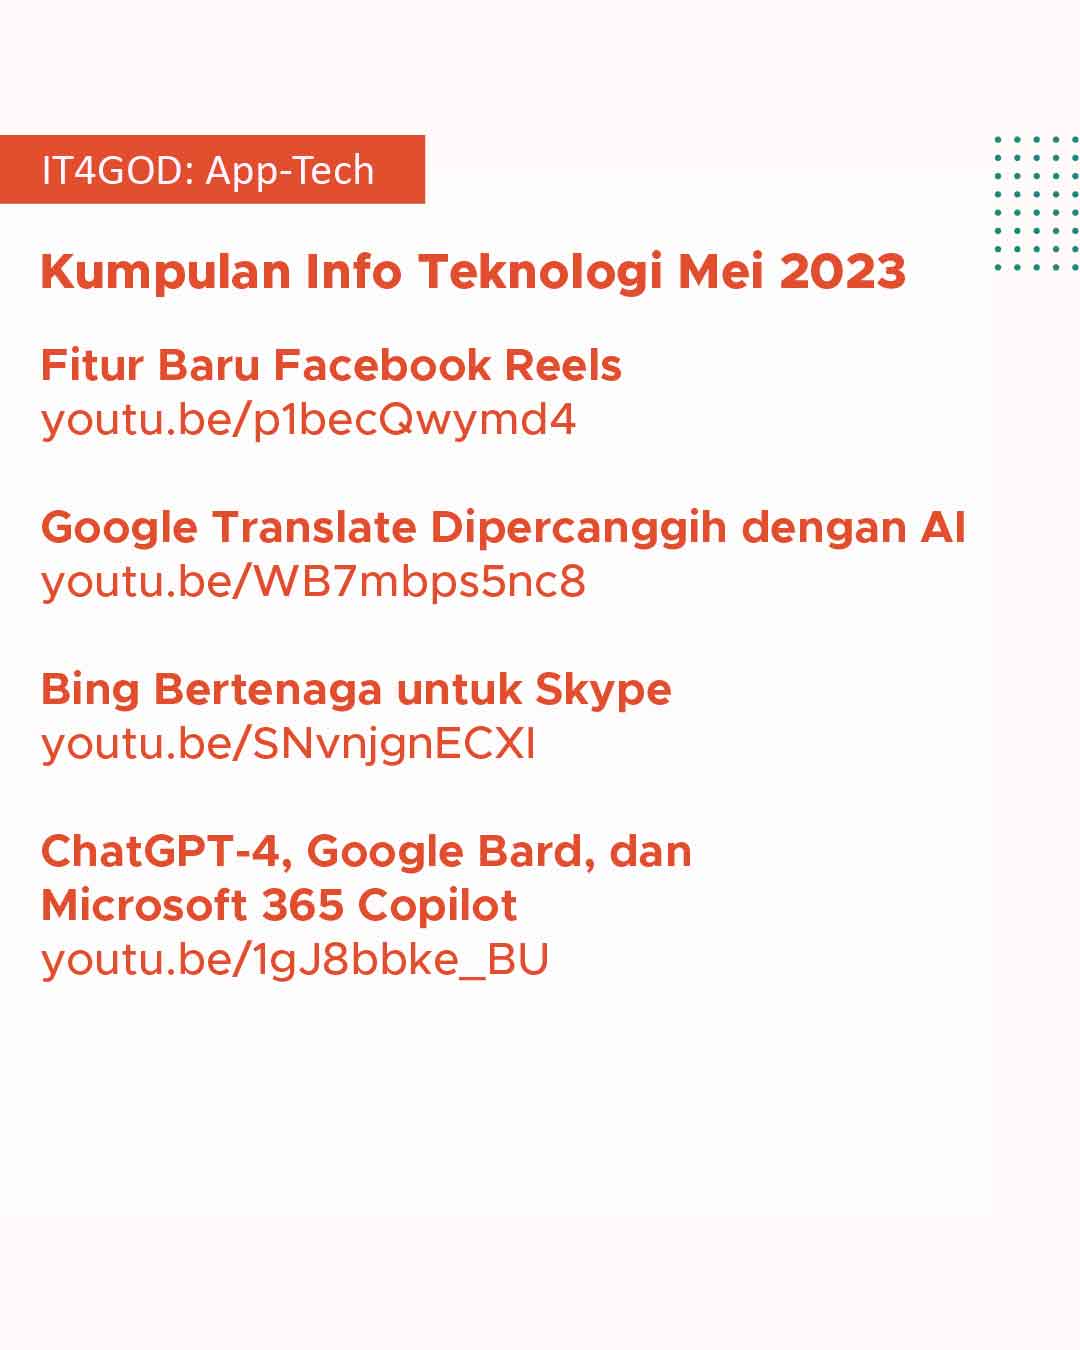 Kumpulan Info teknologi Apps4GOD dari bulan Mei 2023.